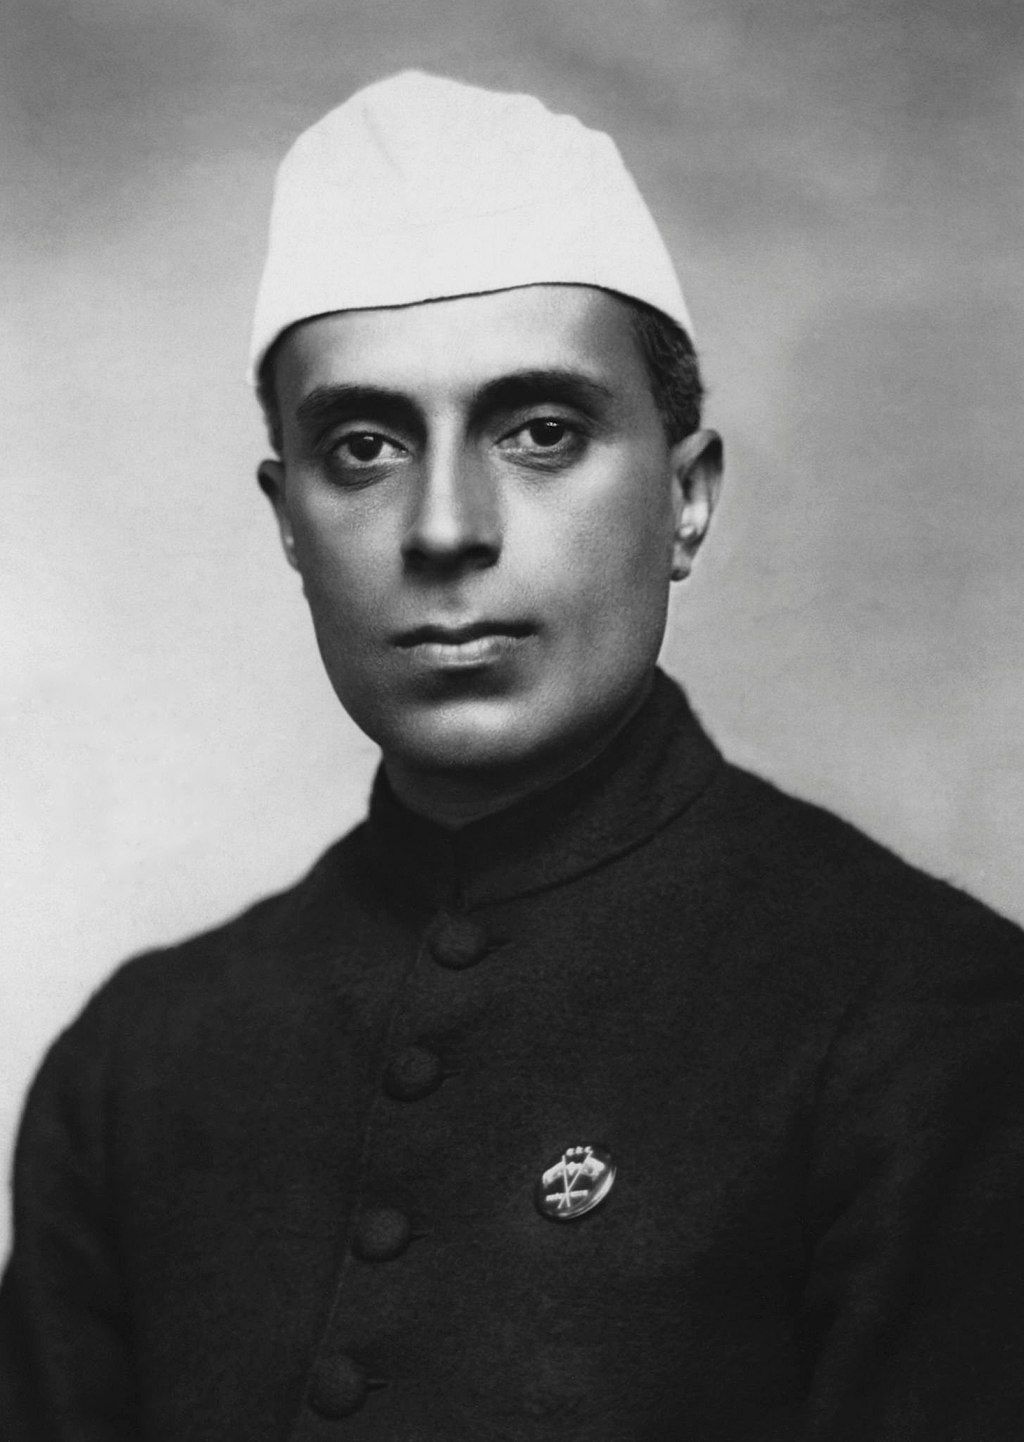 Dzsaváharlál Nehru, az indiai függetlenségi mozgalom egyik vezetője, a független India első kormányfője